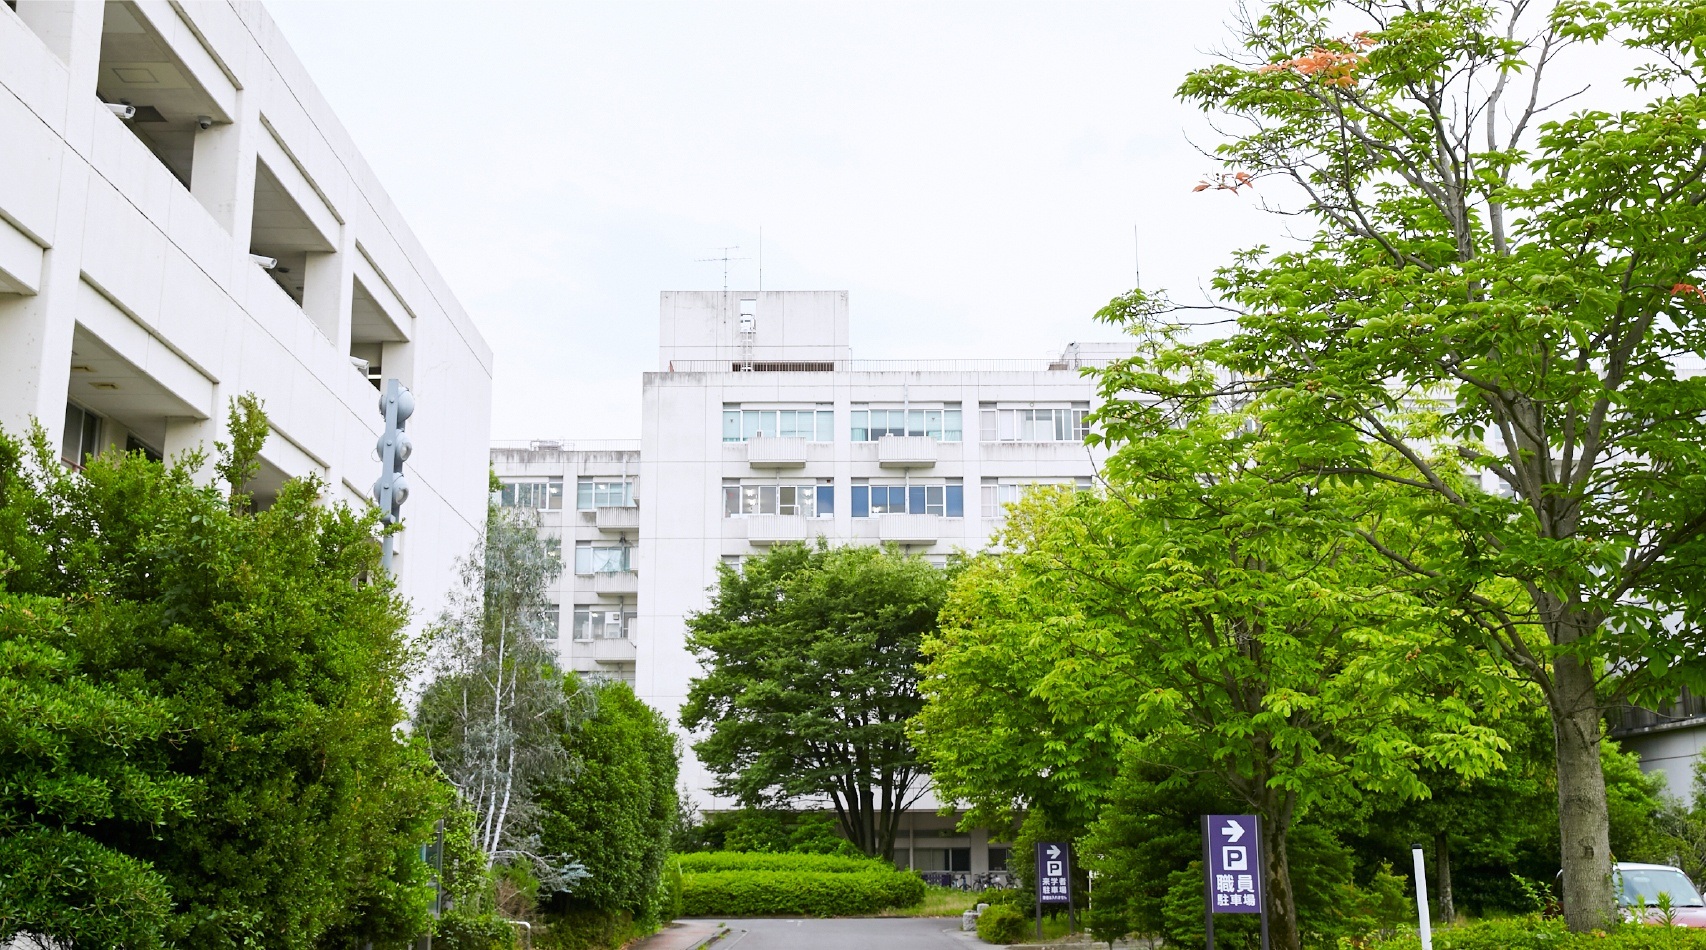 GLIA University of YAMANASHI